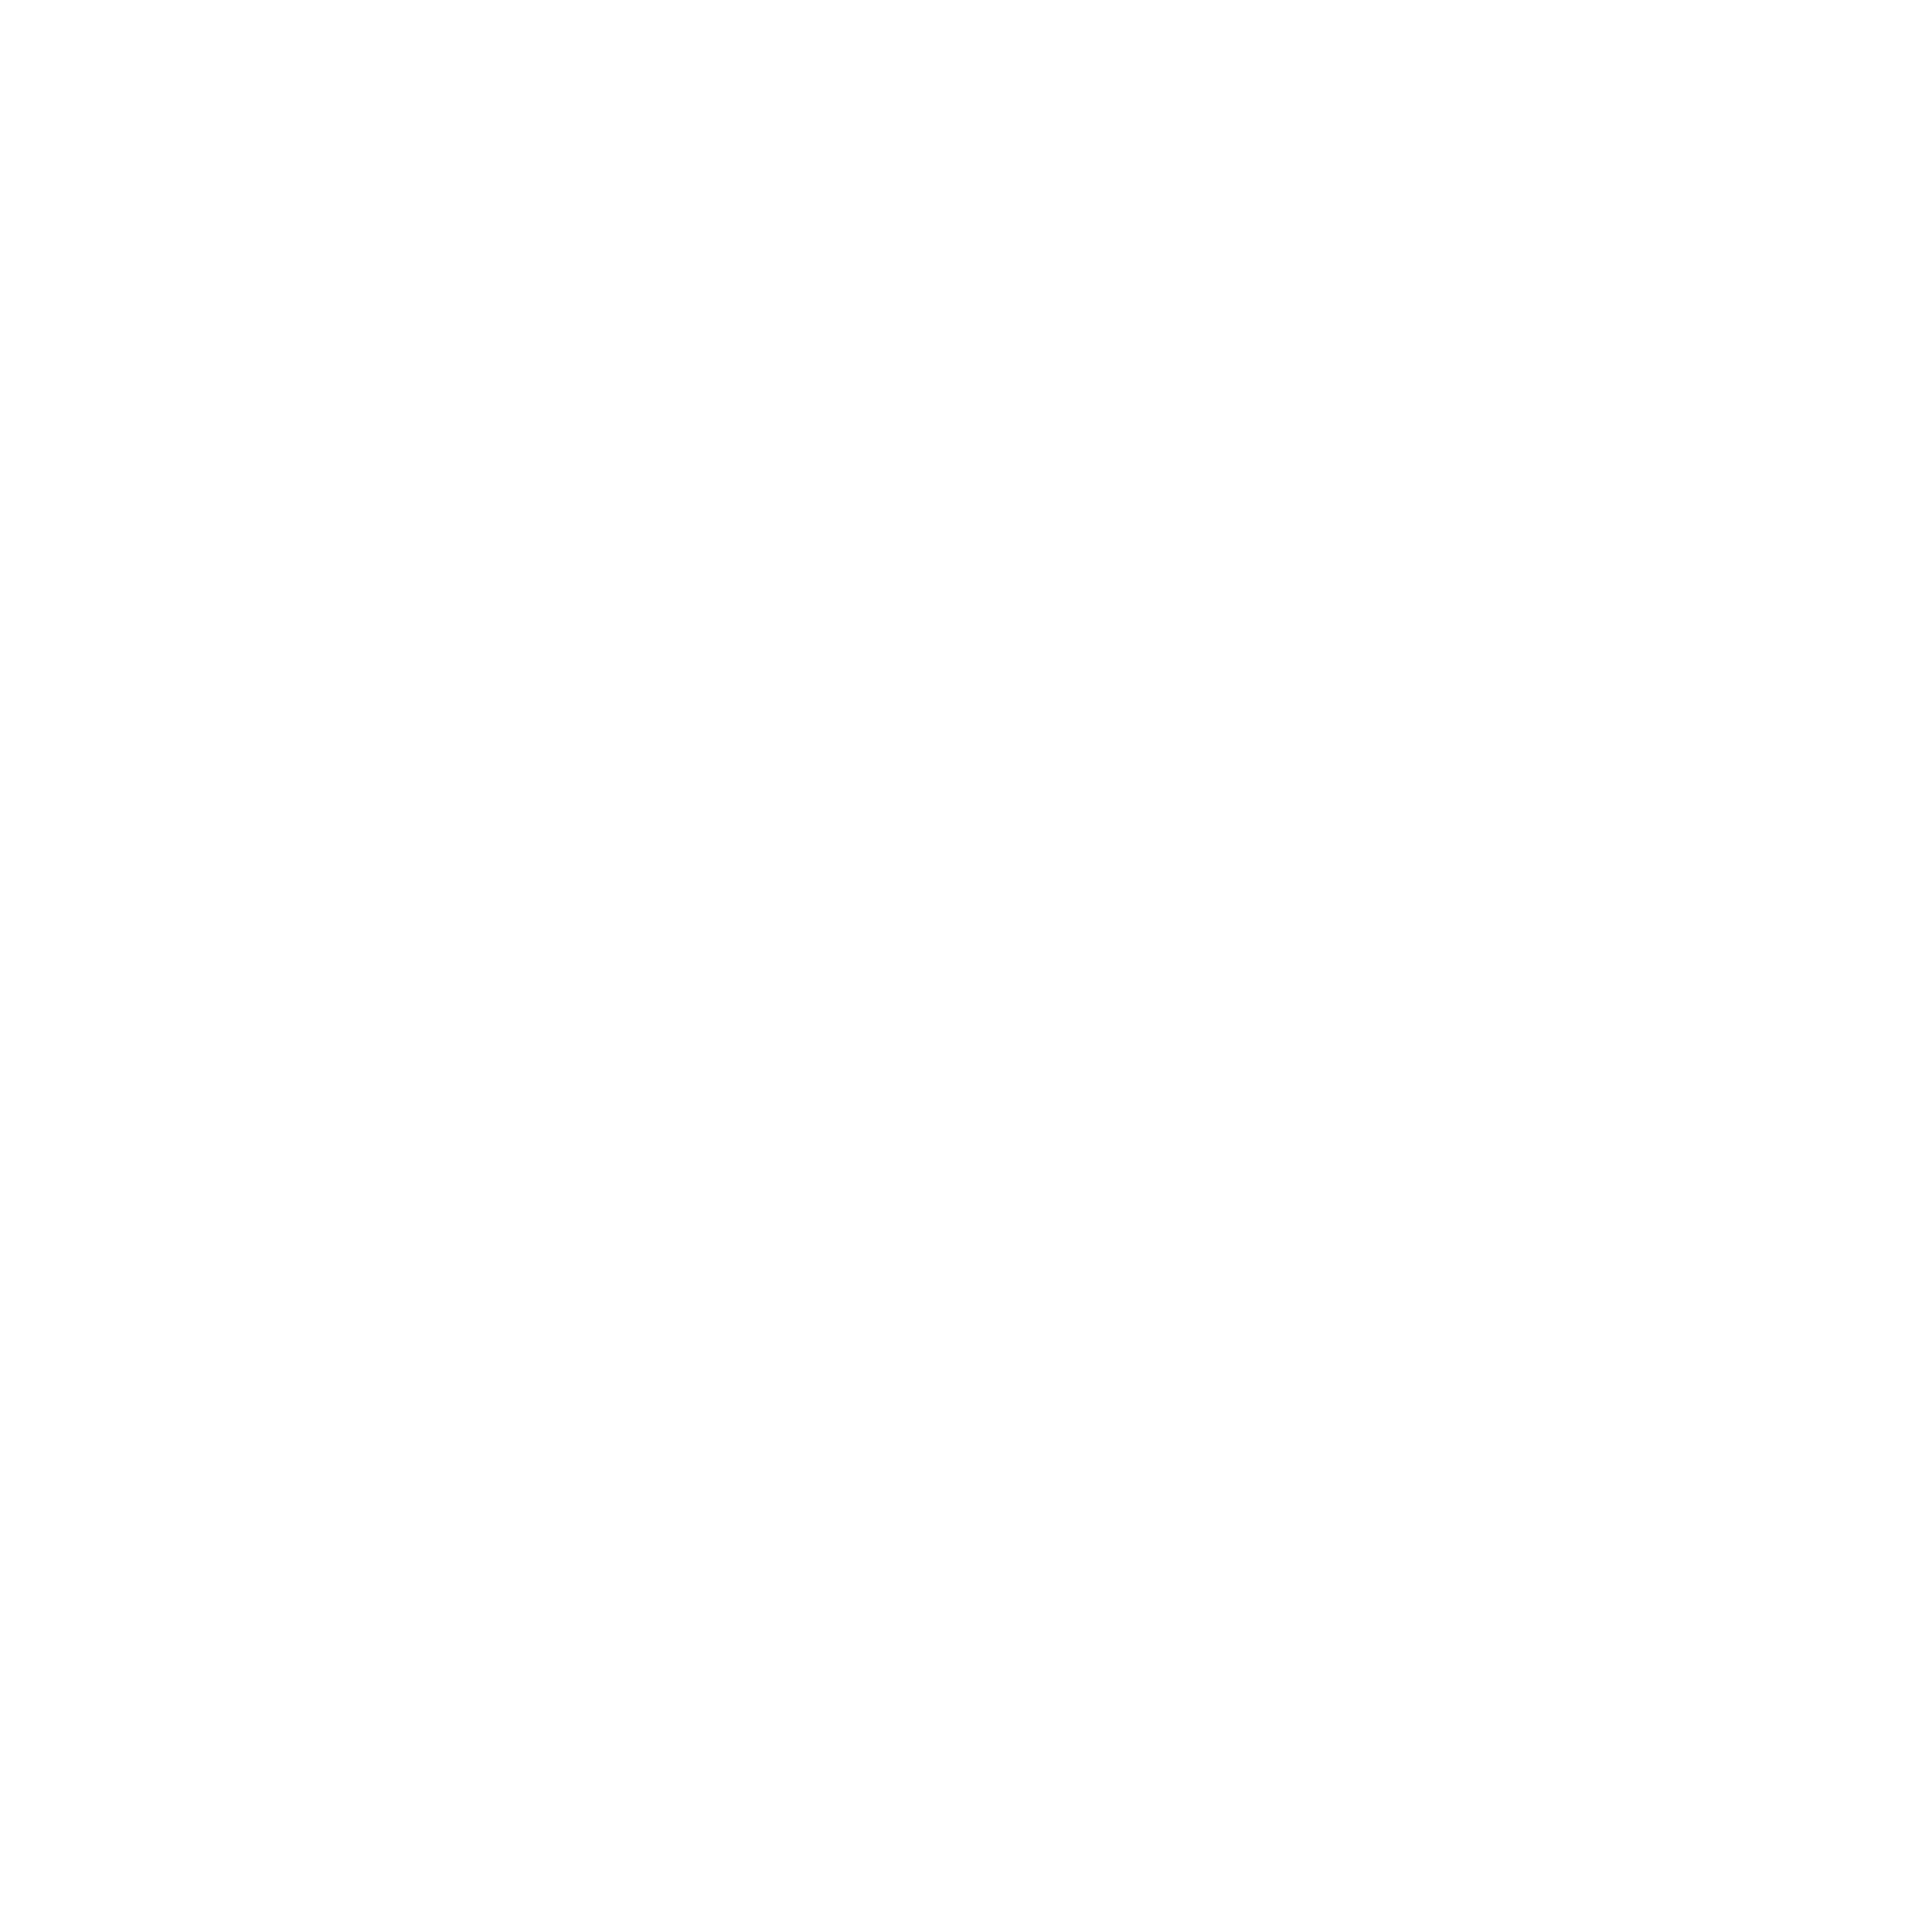 EHLBUREAU